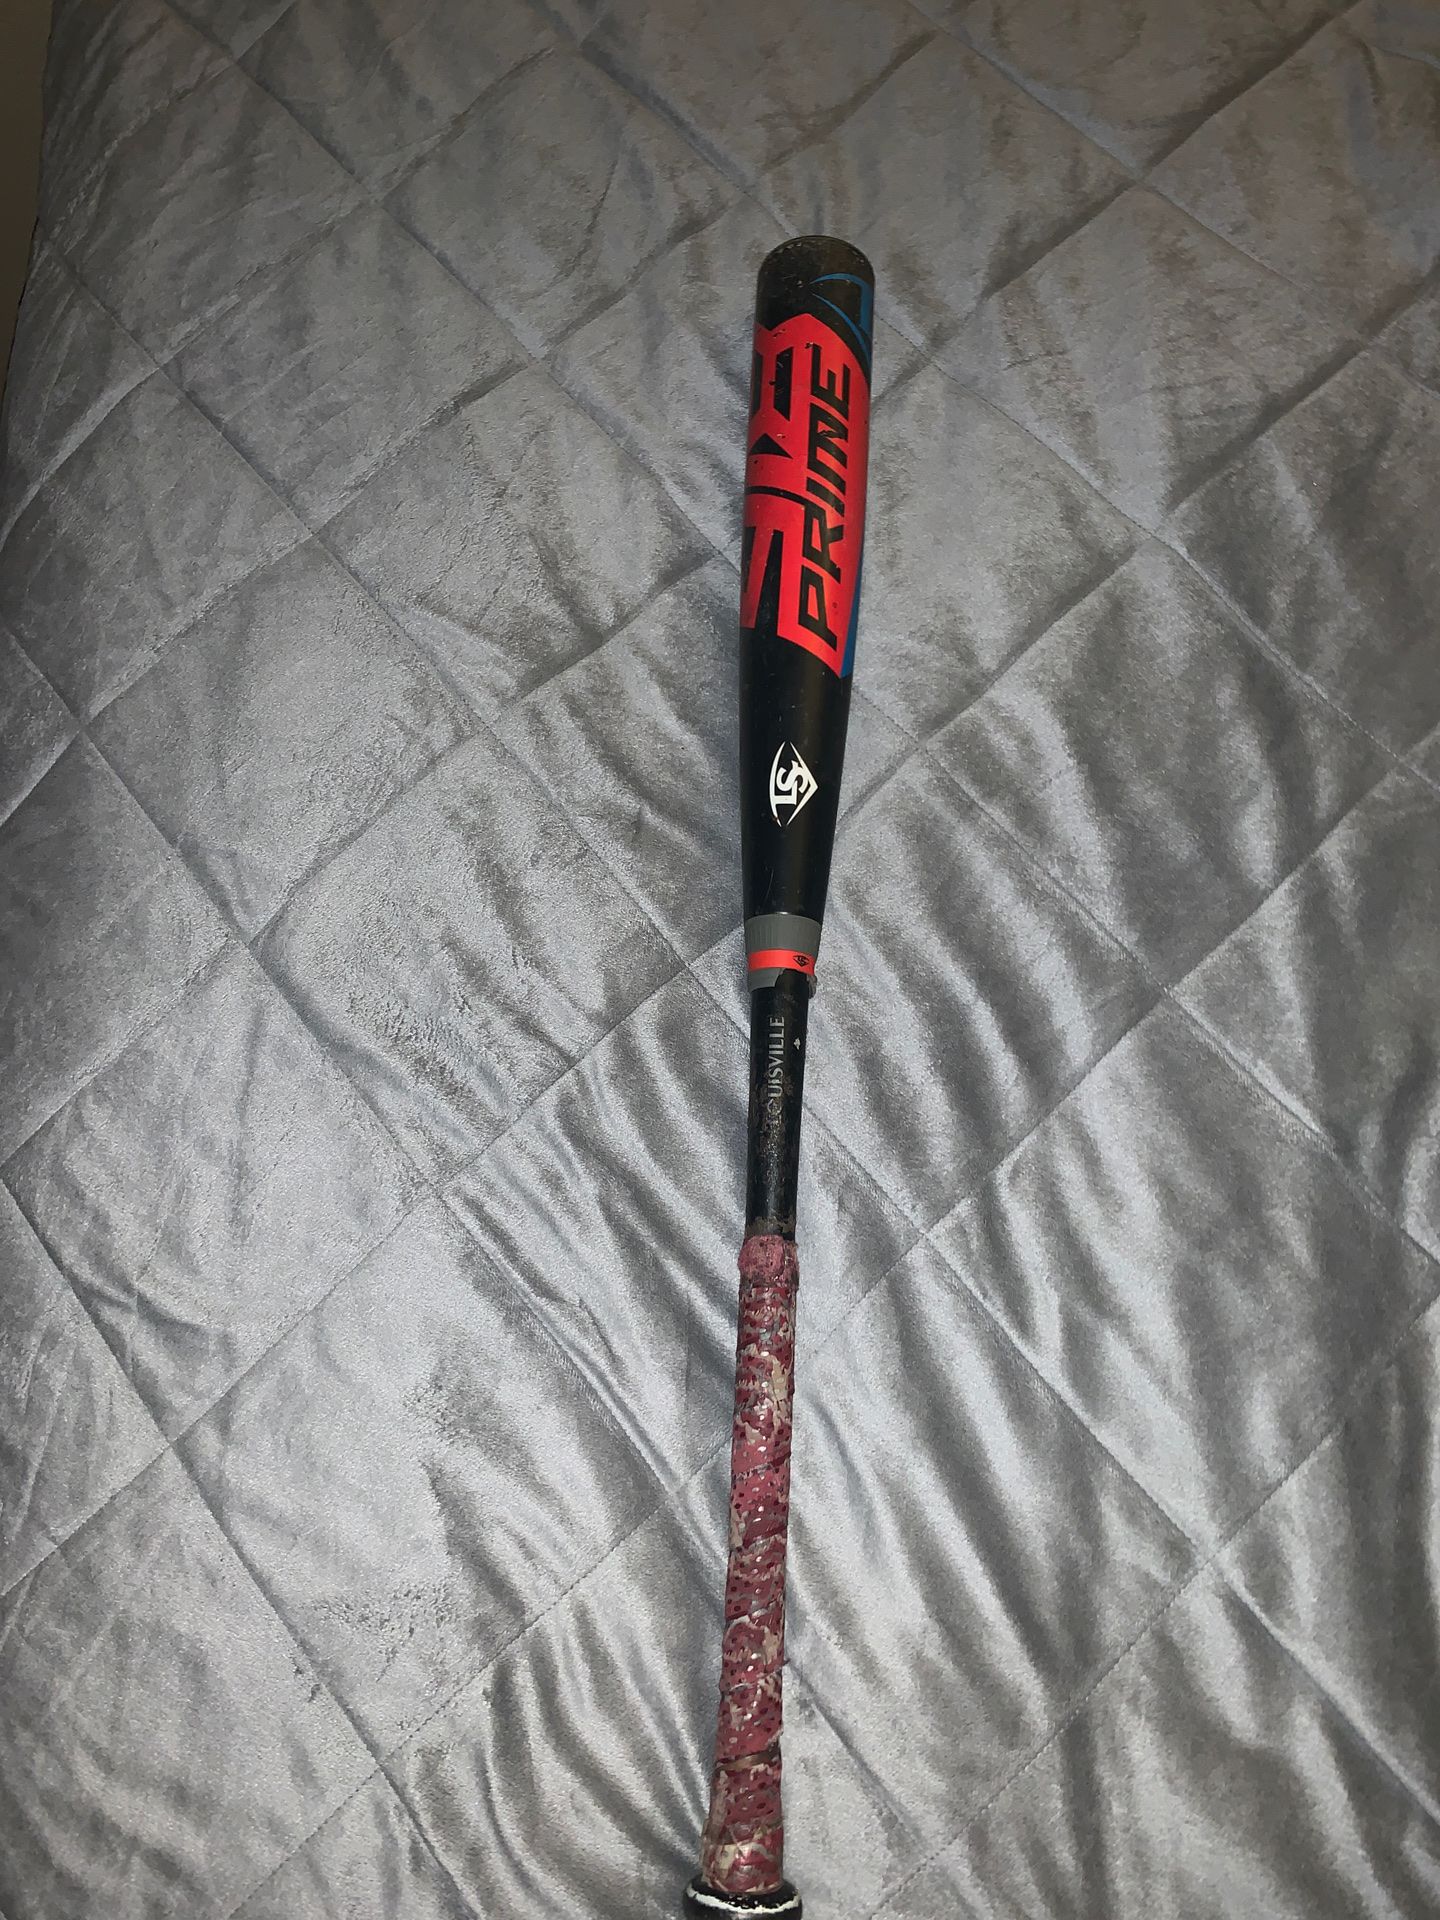 Louisville slugger -3 bbcor baseball bat